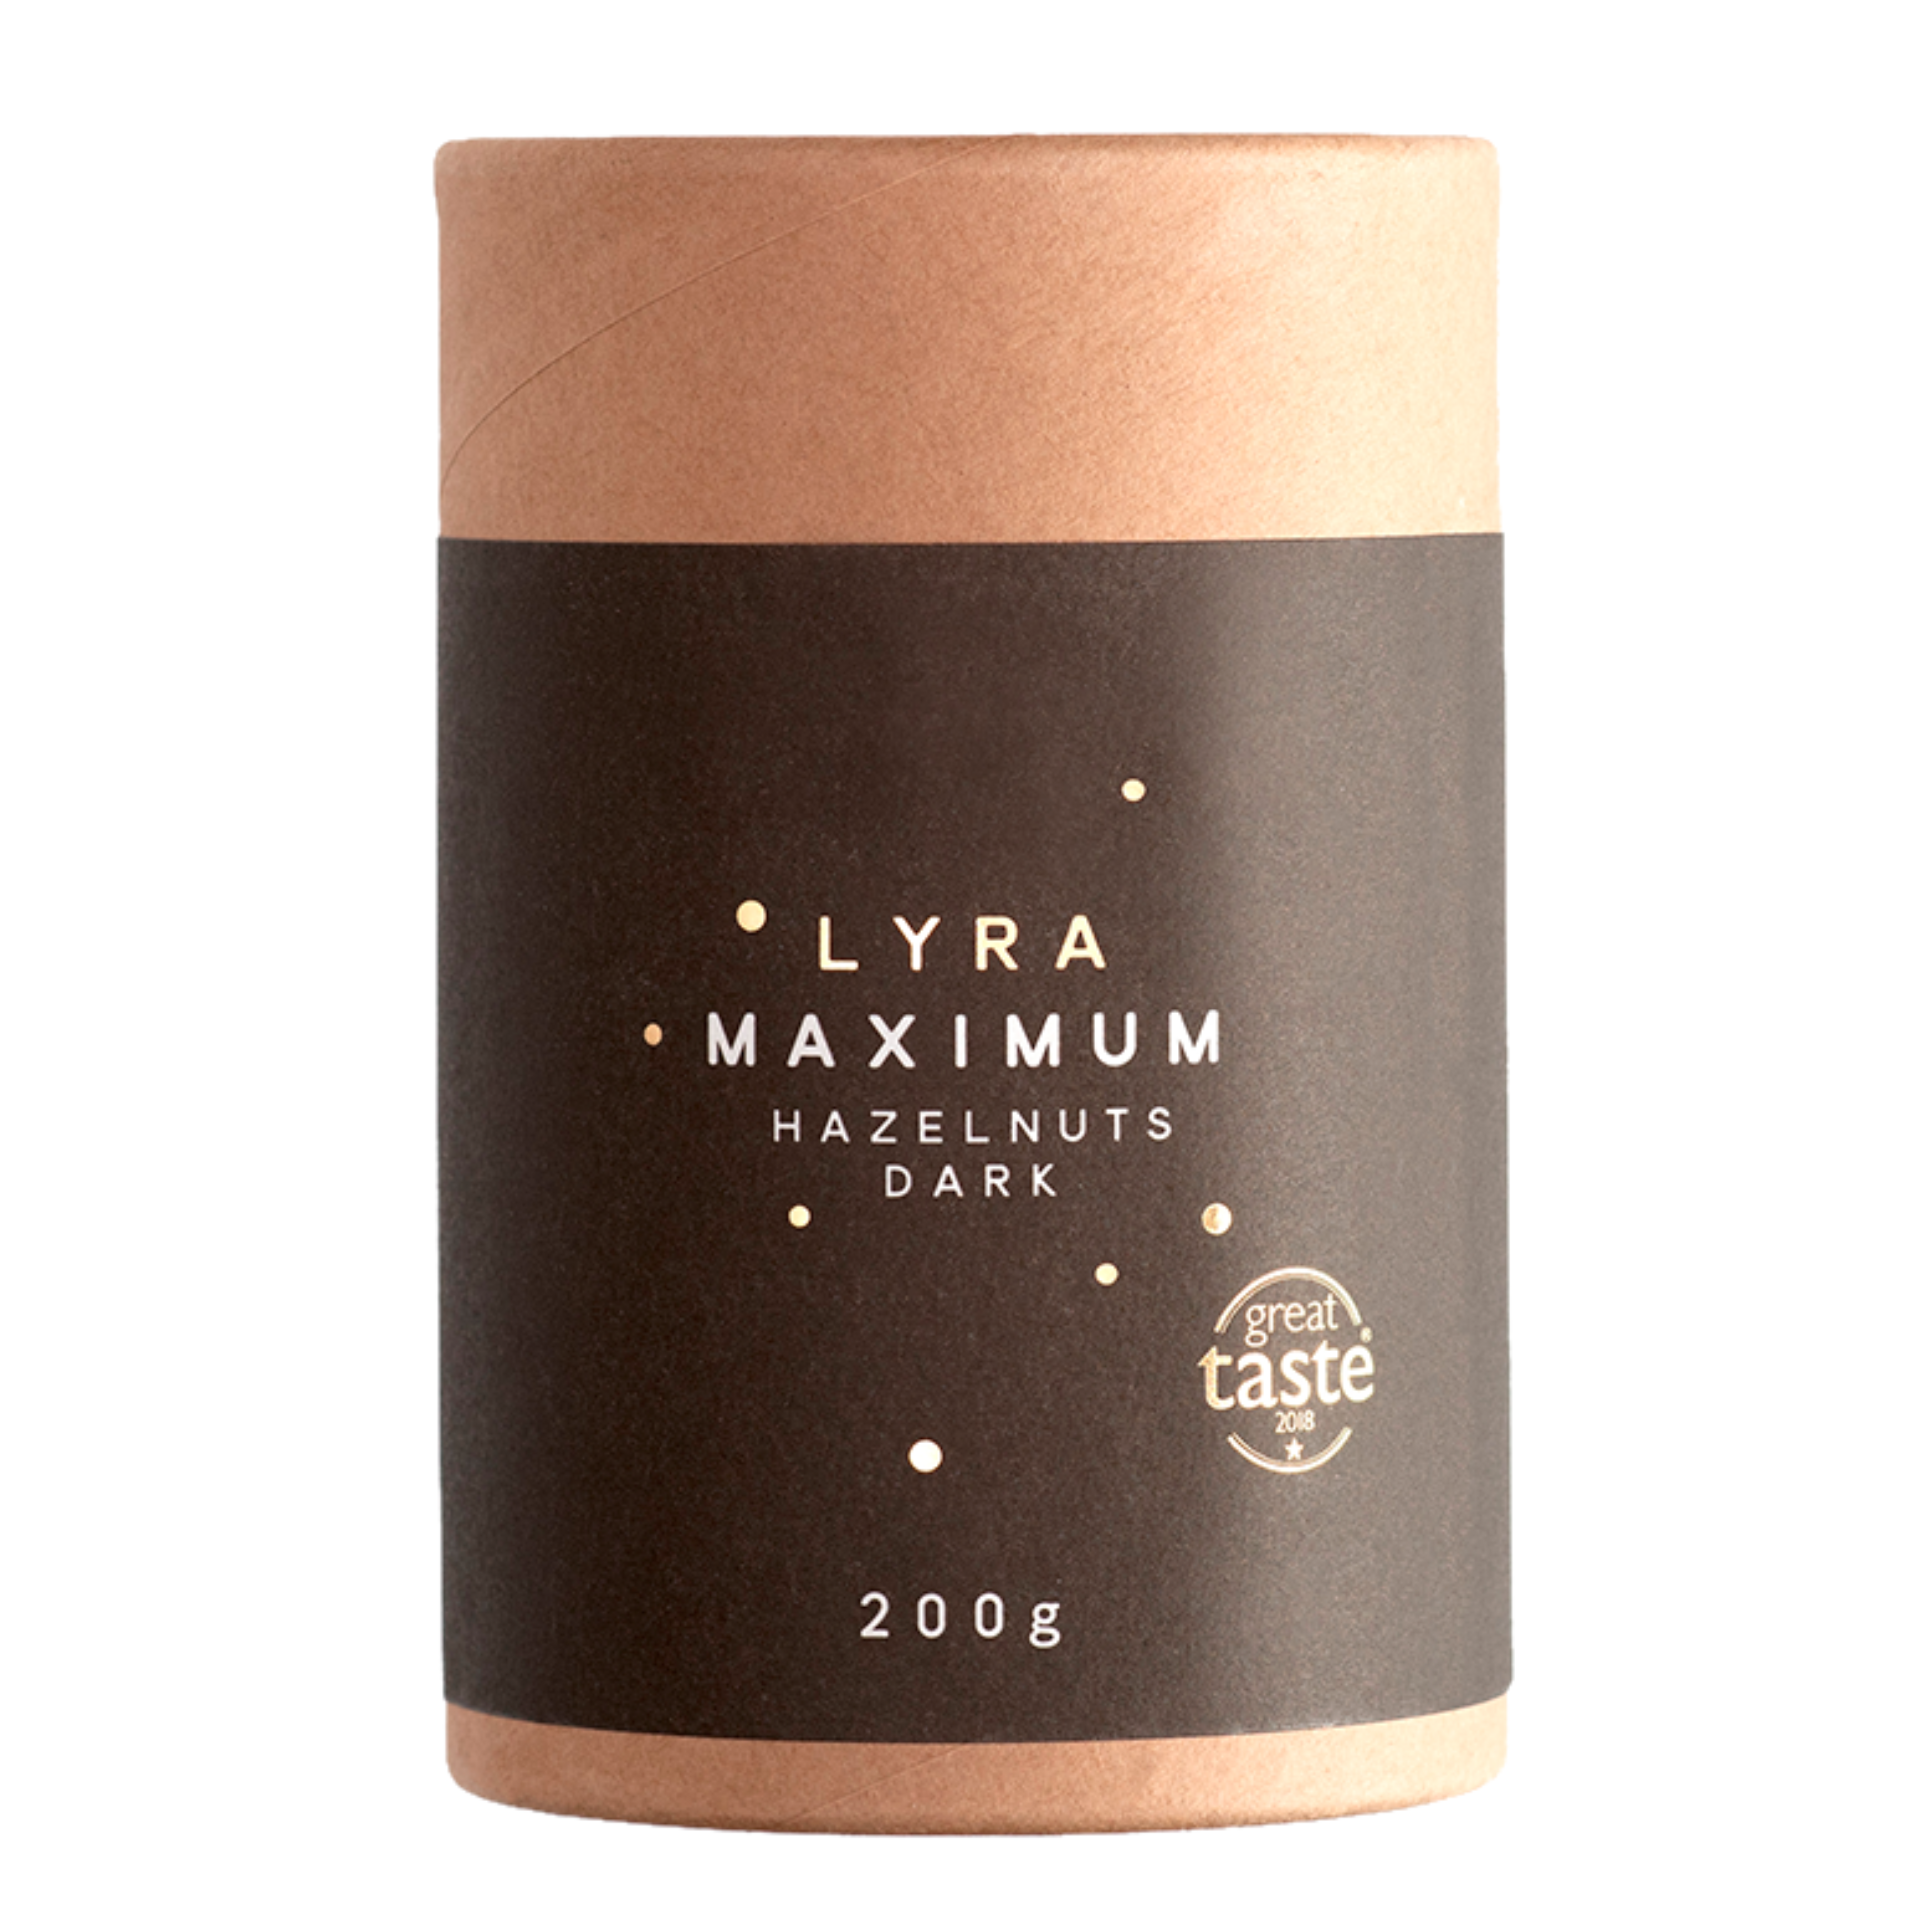 Maximum Hazelnuts Dark 200g Lyra